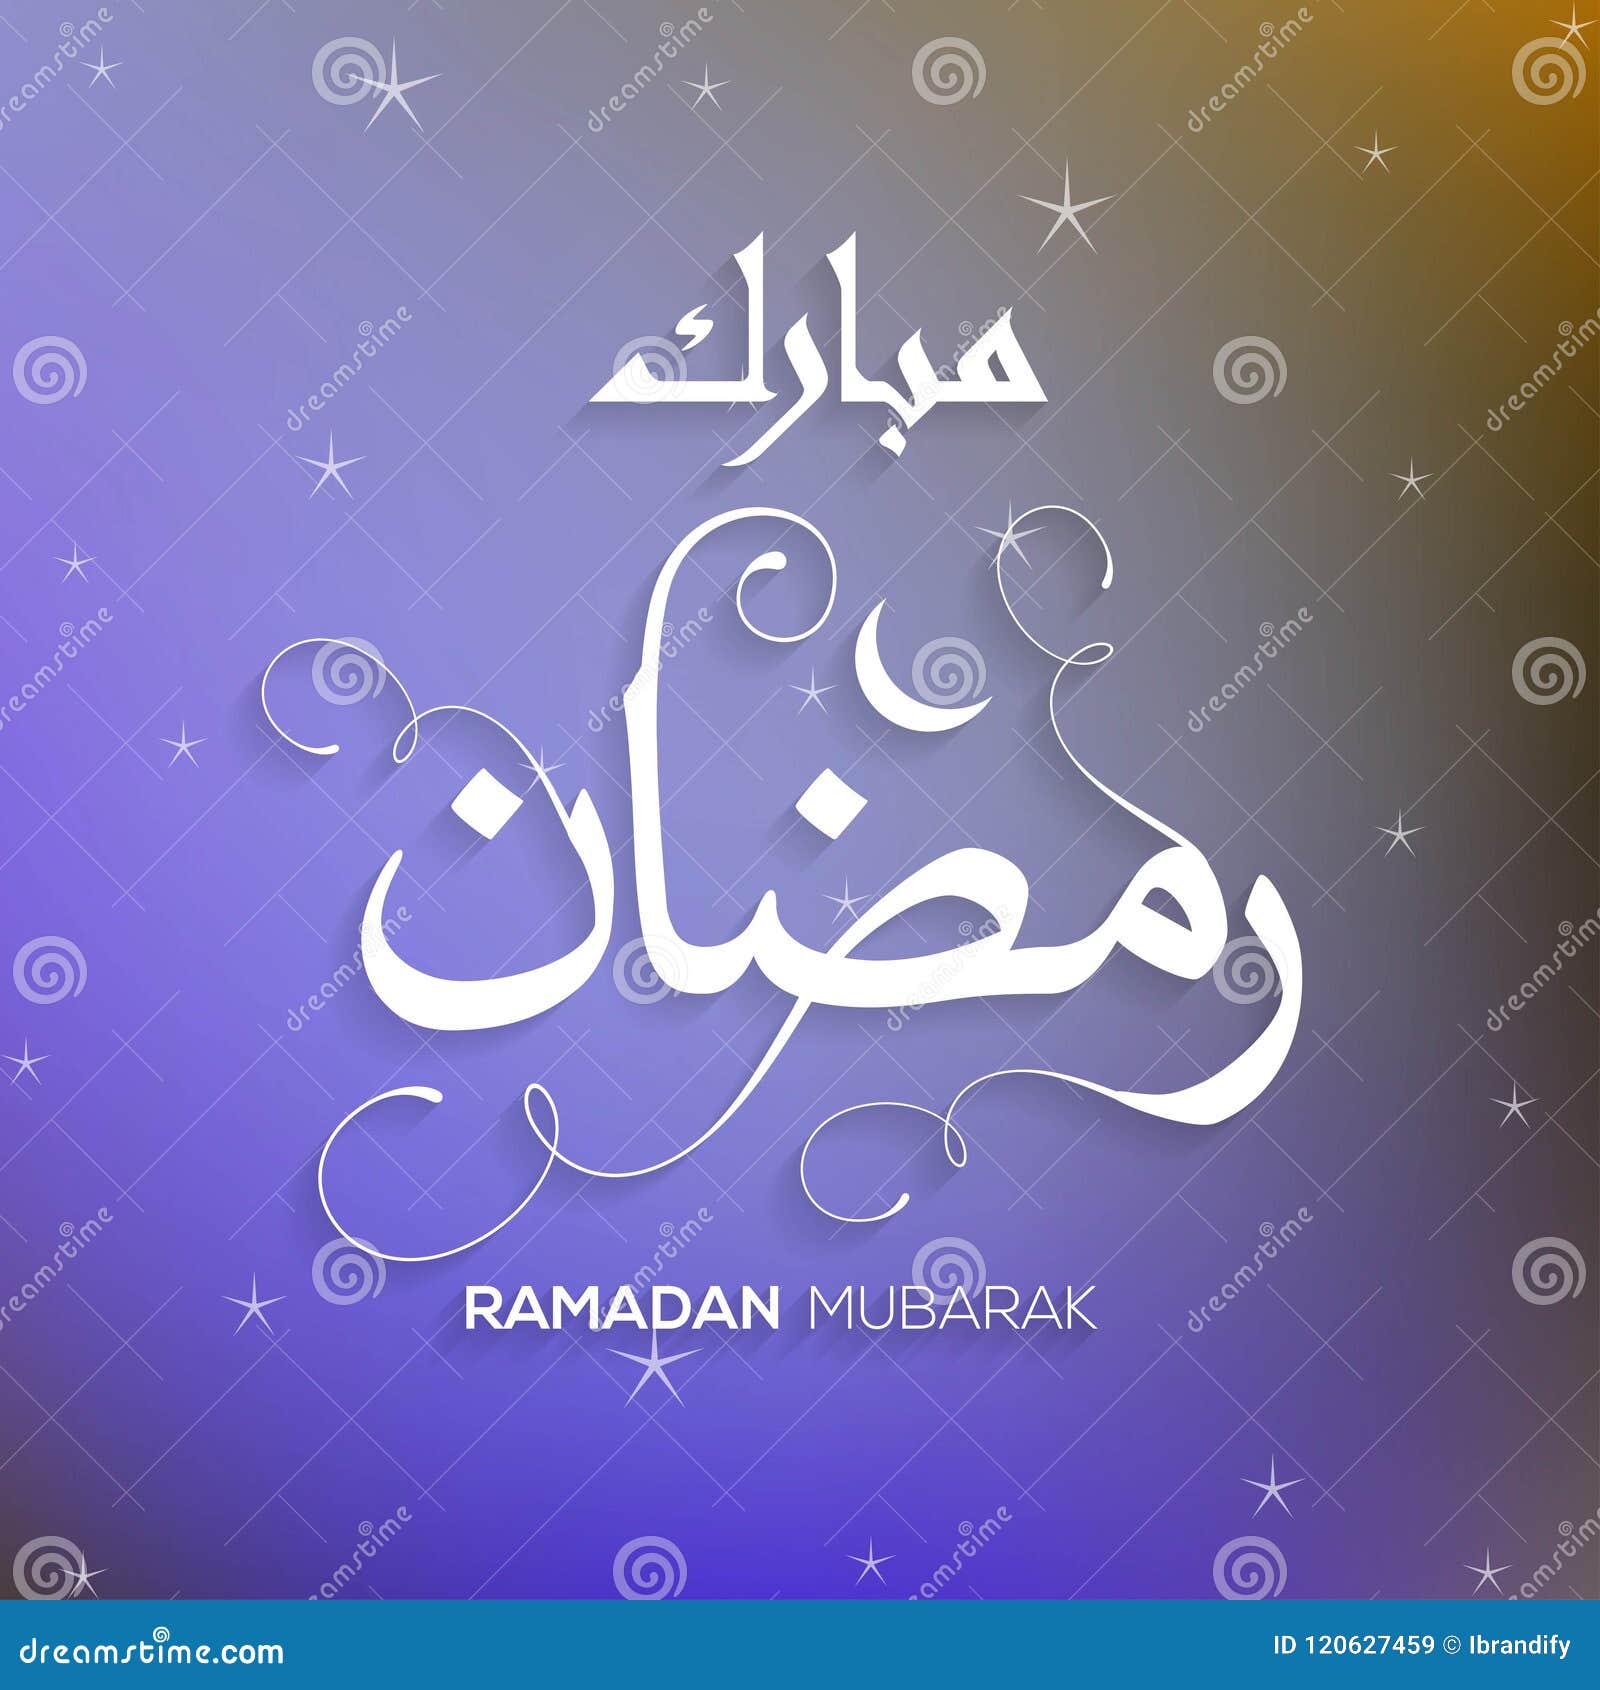 Ramadan Kareem Beautiful Greeting Card With Arabic Calligraphy W Stock